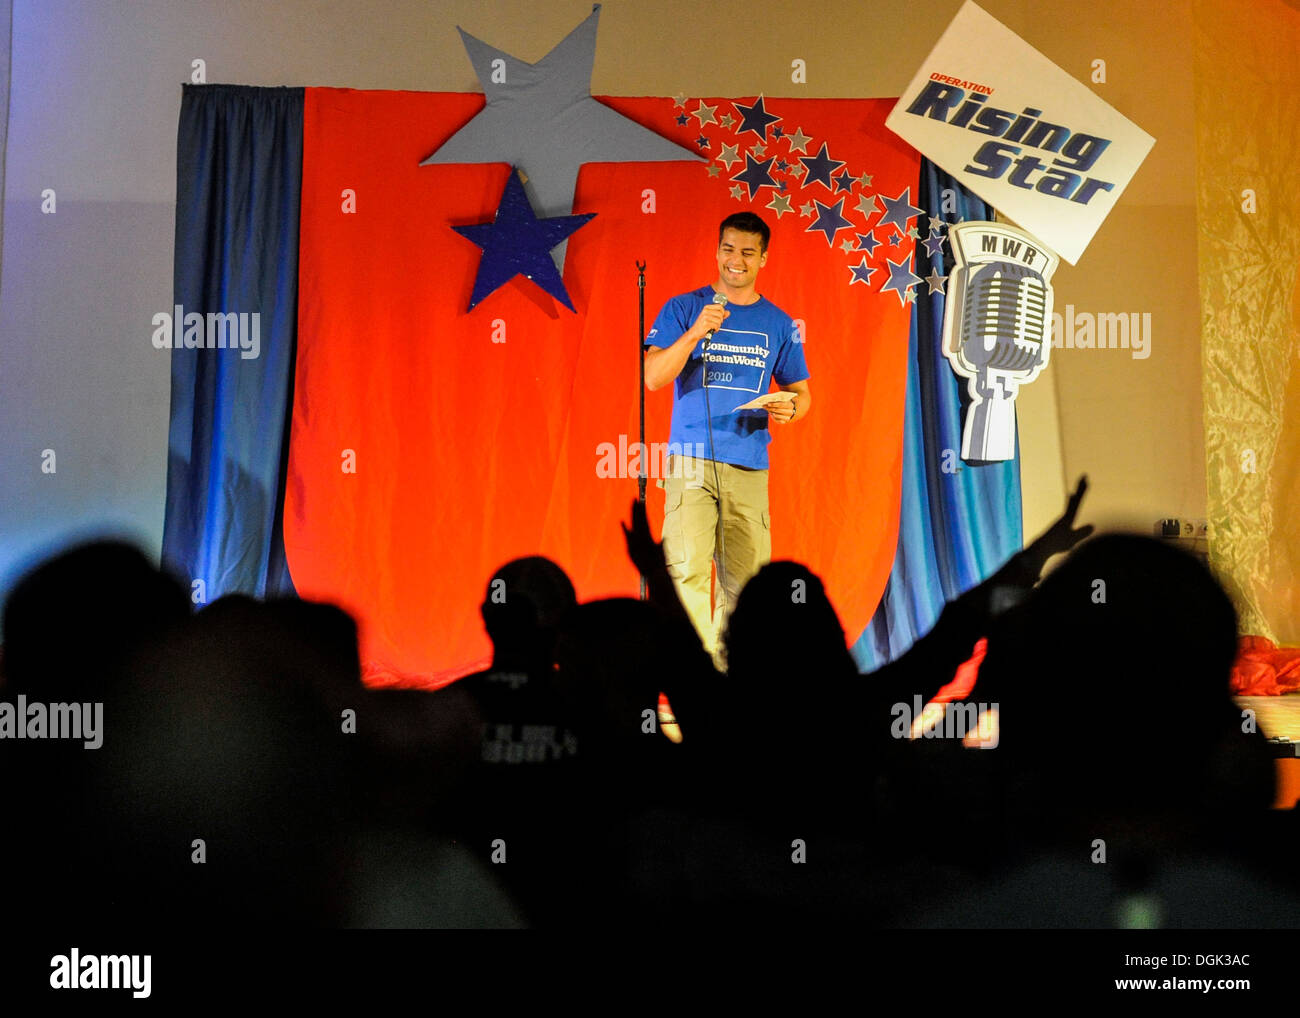 CAMP LEMONNIER, Gibuti (ott. 11, 2013) Air Force Capt. Luc Chandou canta una buona sensazione di Michael Buble durante il funzionamento Rising Star a Camp Lemonnier. Funzionamento Rising Star è un annuale concorso di canto per i militari Usa personne Foto Stock